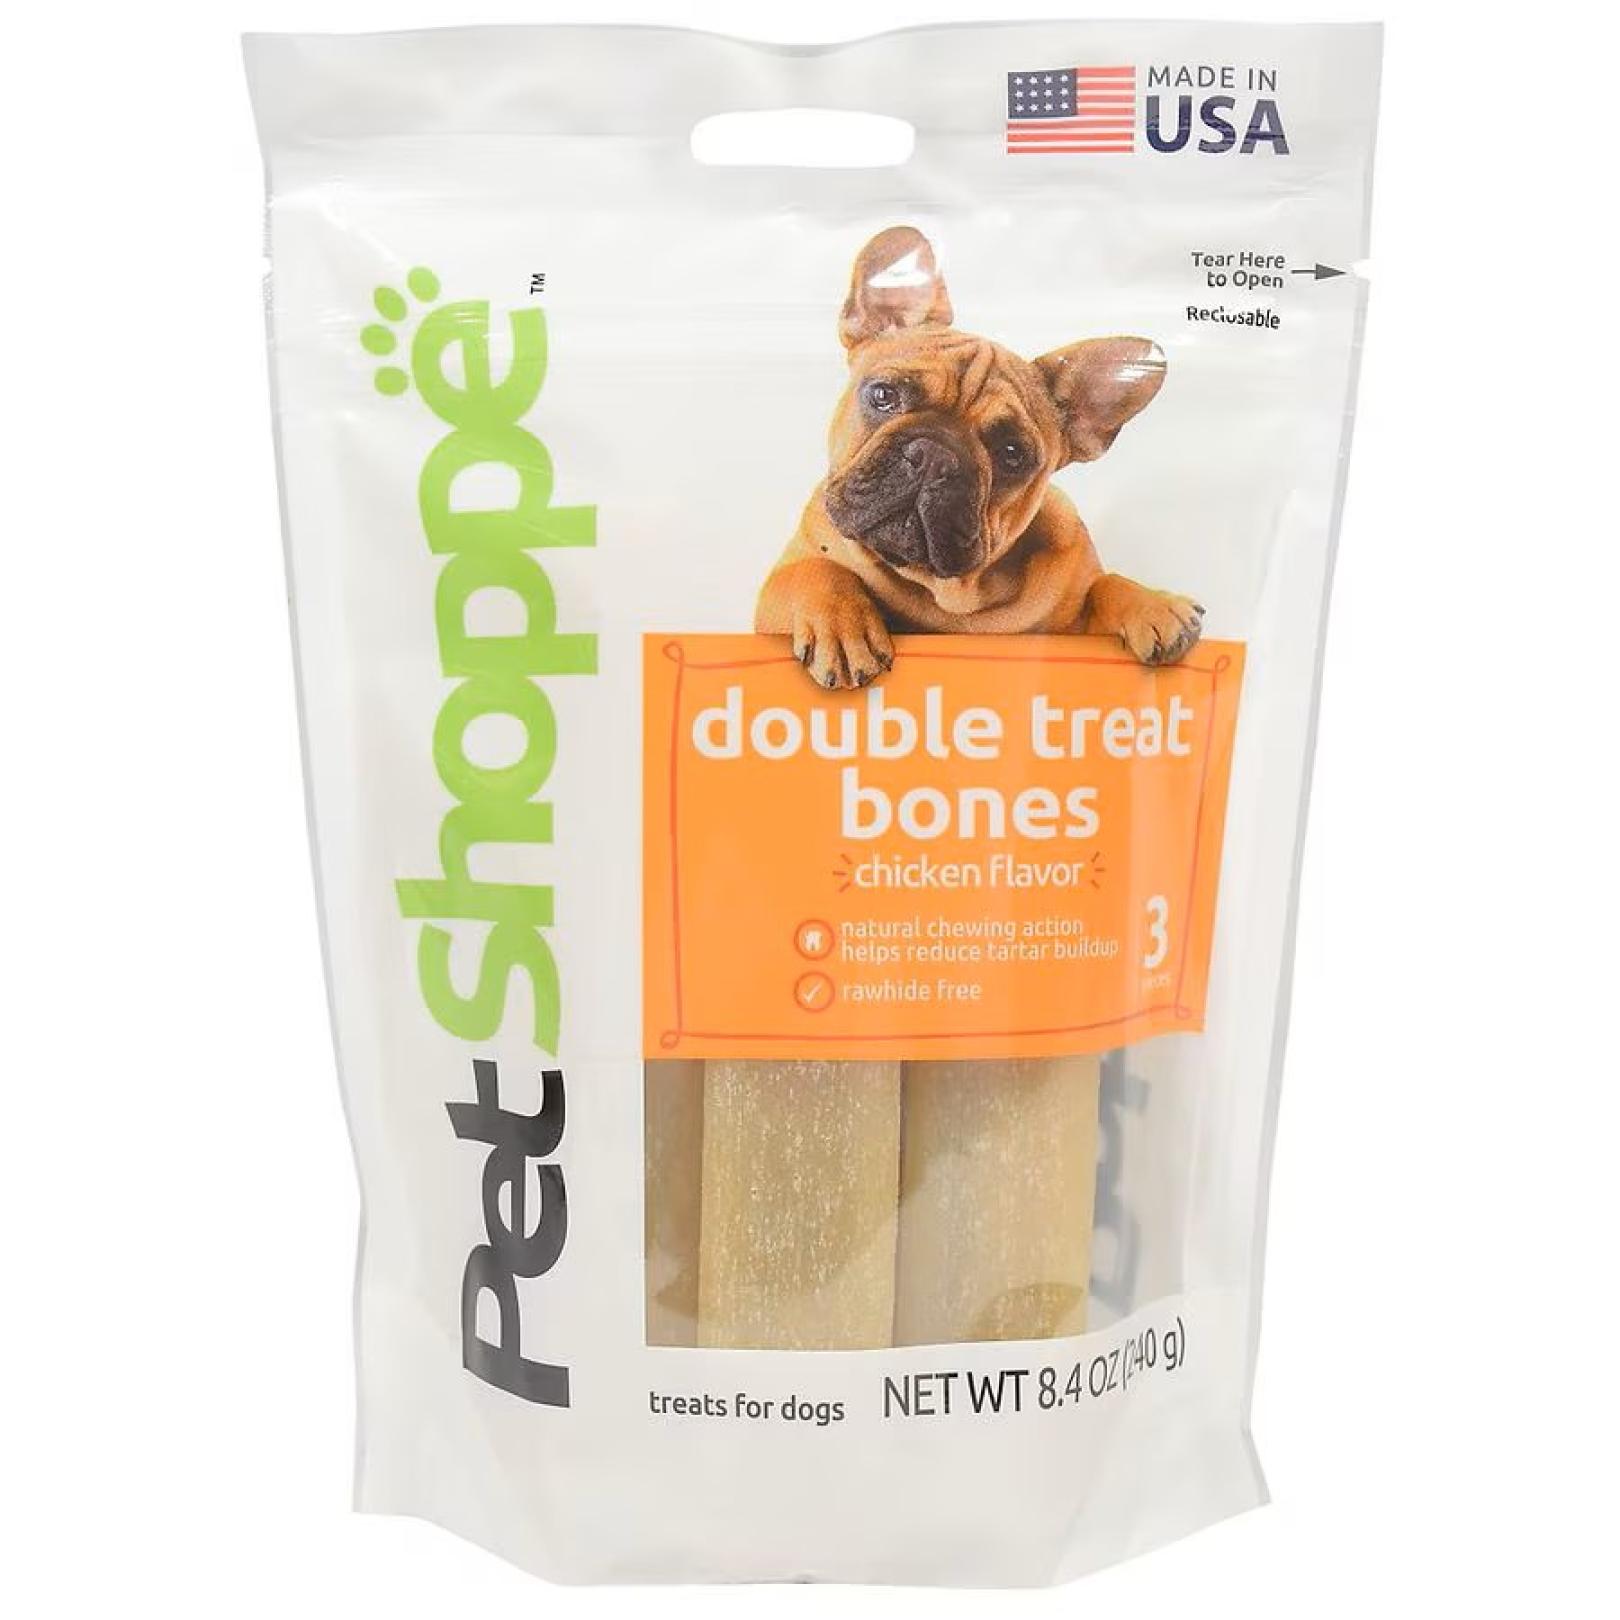 Double Treat Bones dog treats